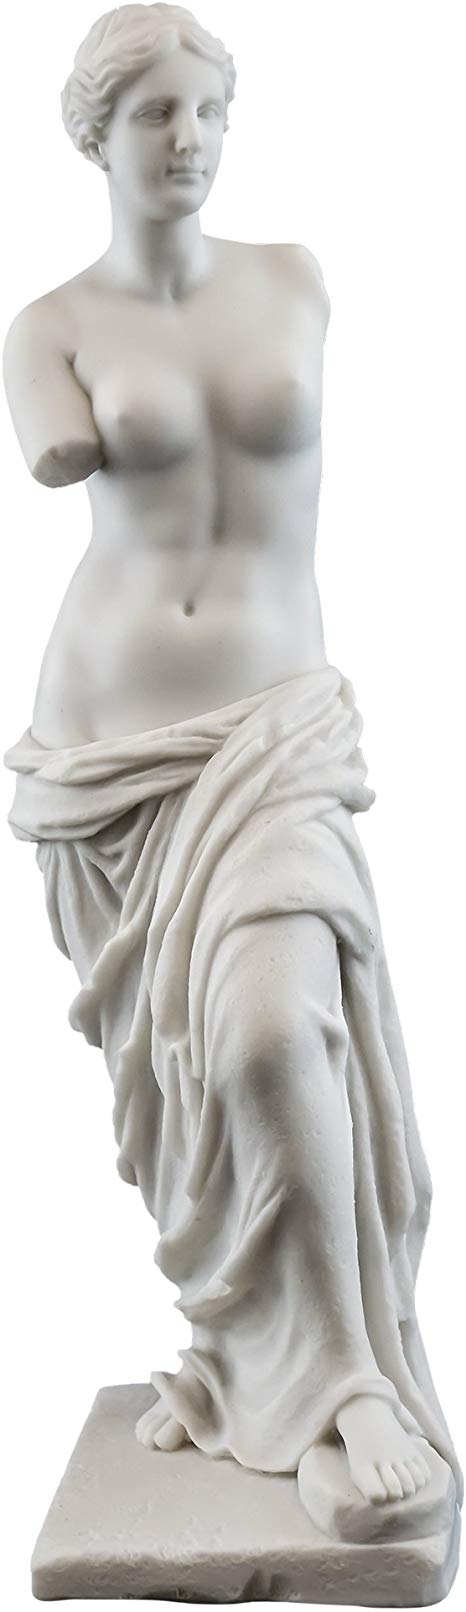 Top Collection Venus de Milo Replica Statue from The Louvre. 11-Inch Premium Cold Cast Marble. Museum-Grade Masterpiece Replica.